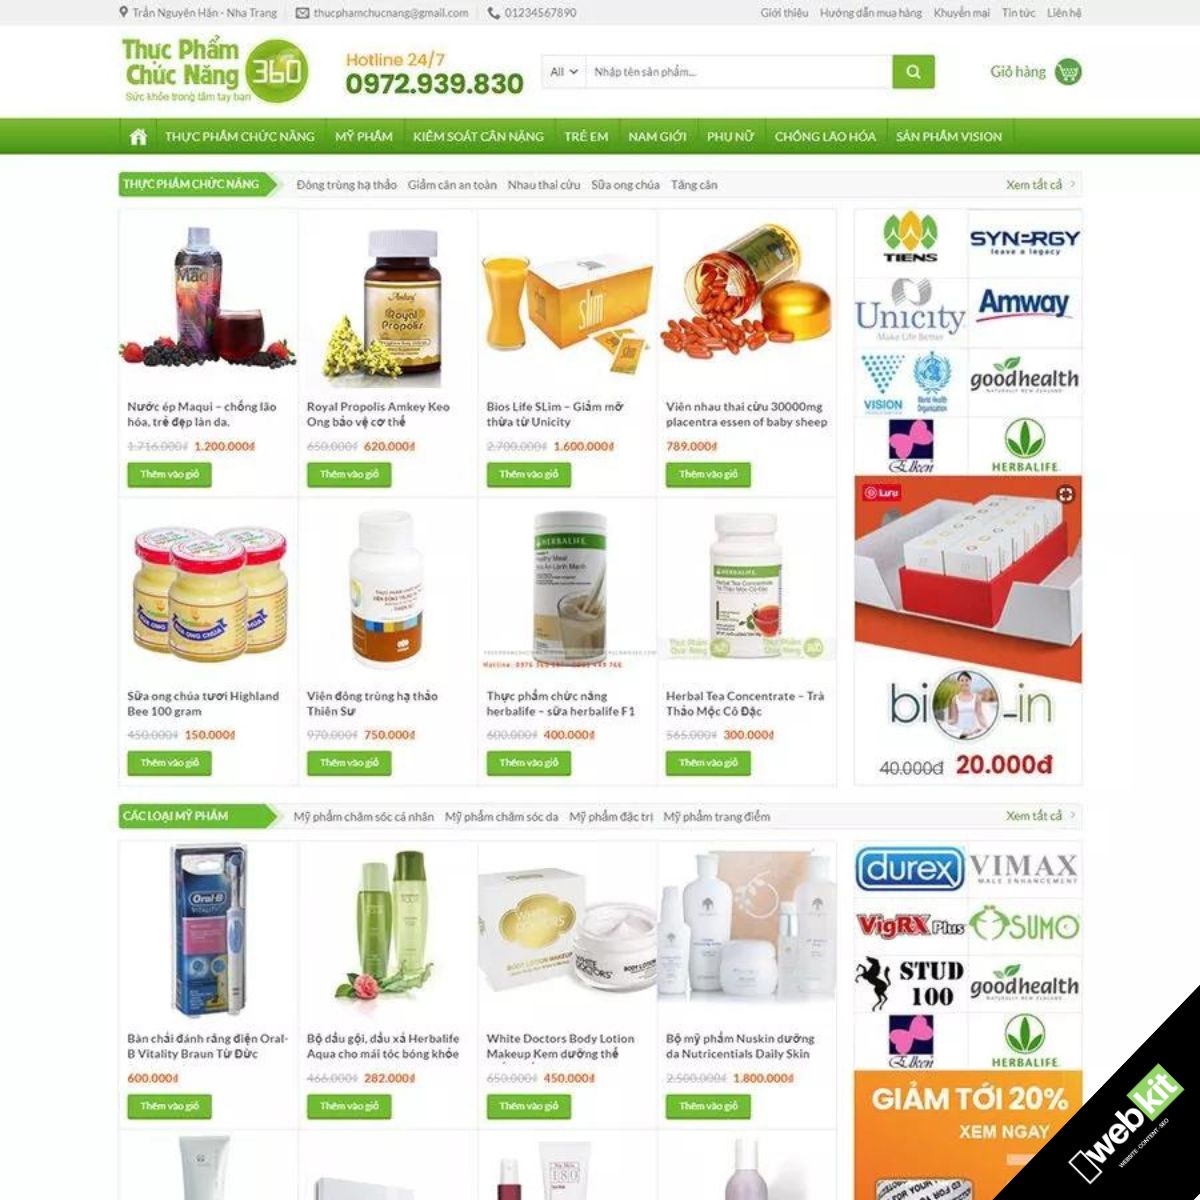 Thiết kế website cửa hàng bán thực phẩm chức năng, mỹ phẩm làm đẹp - WebKit 9090